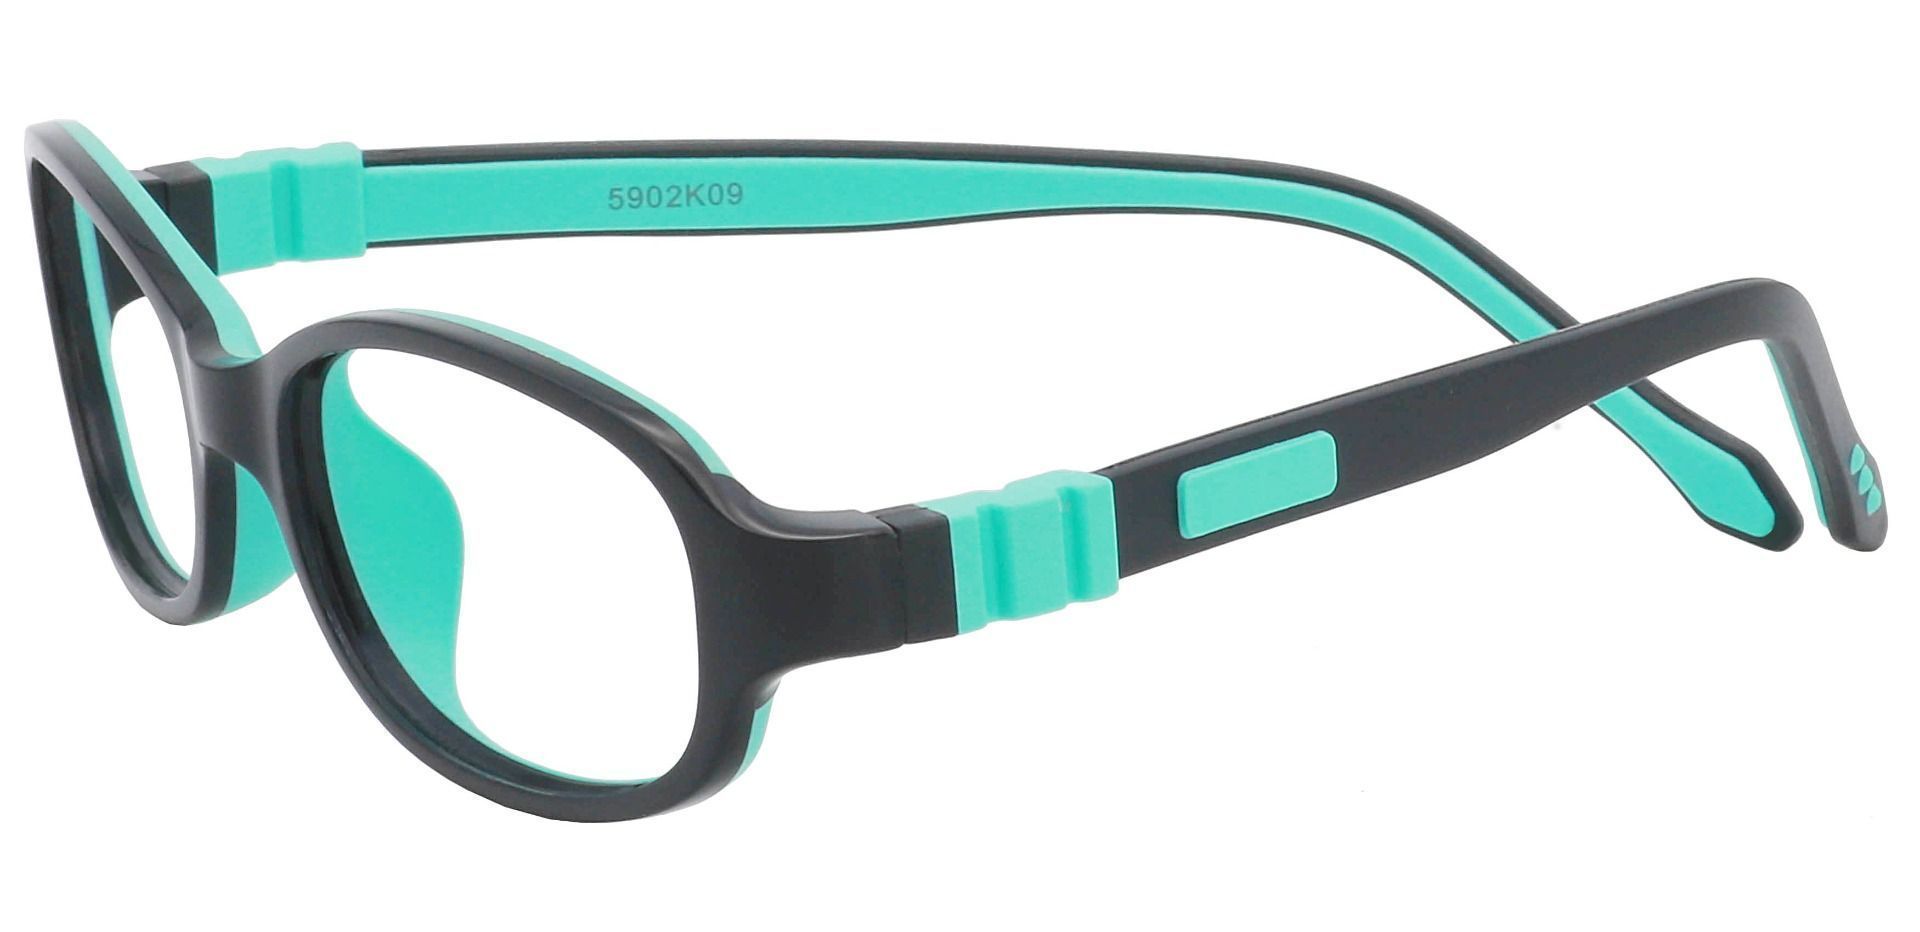 Toucan Rectangle Prescription Glasses - Black/aqua